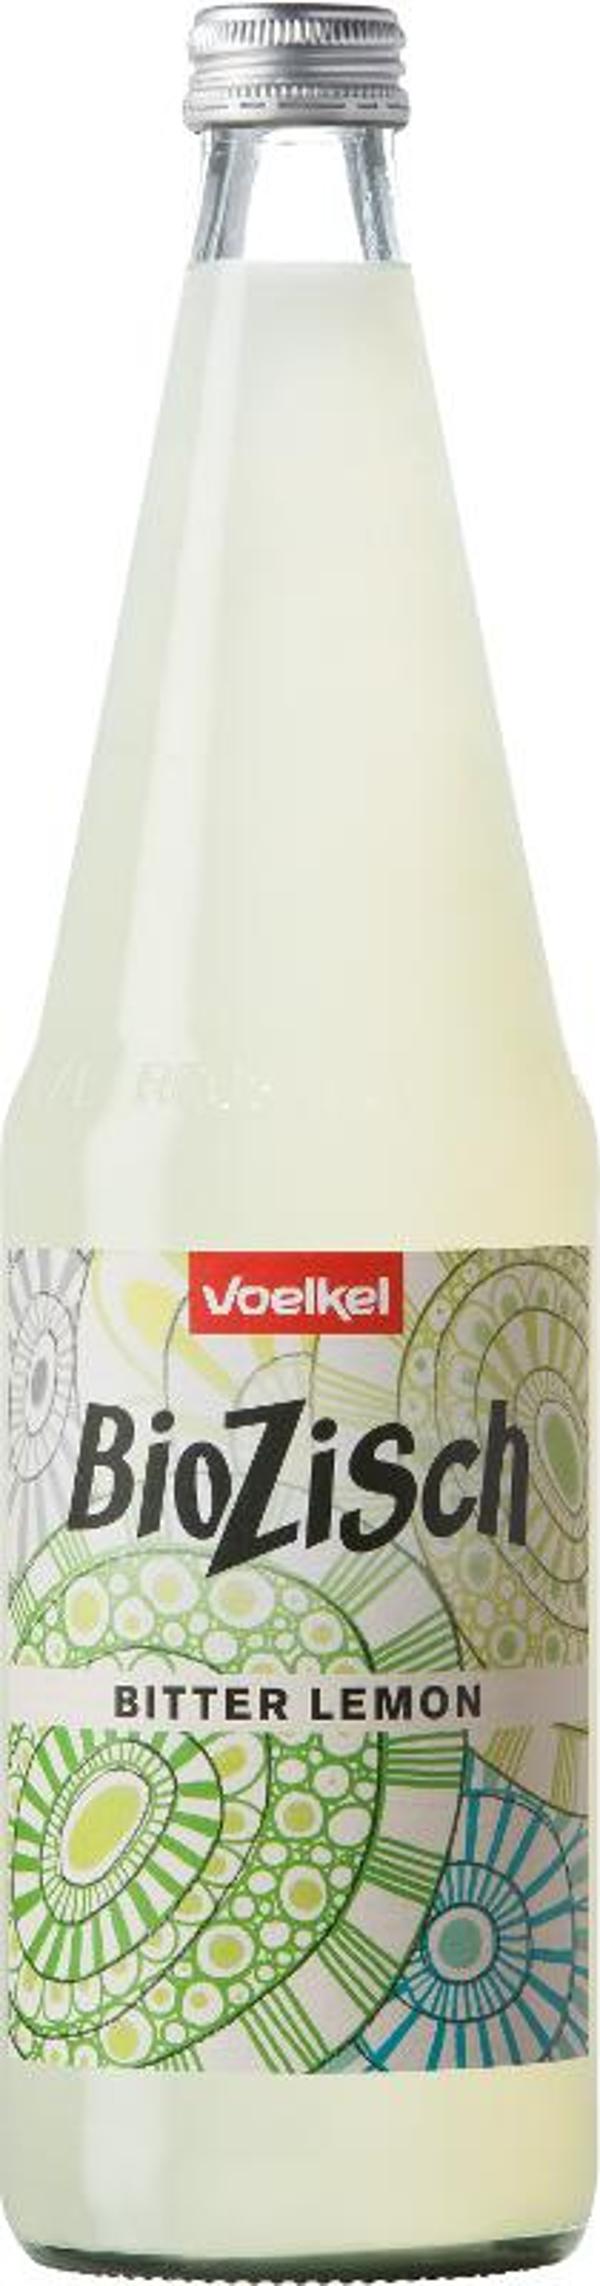 Produktfoto zu VPE Bio Zisch Bitter-Lemon 6x0,7 l Voelkel